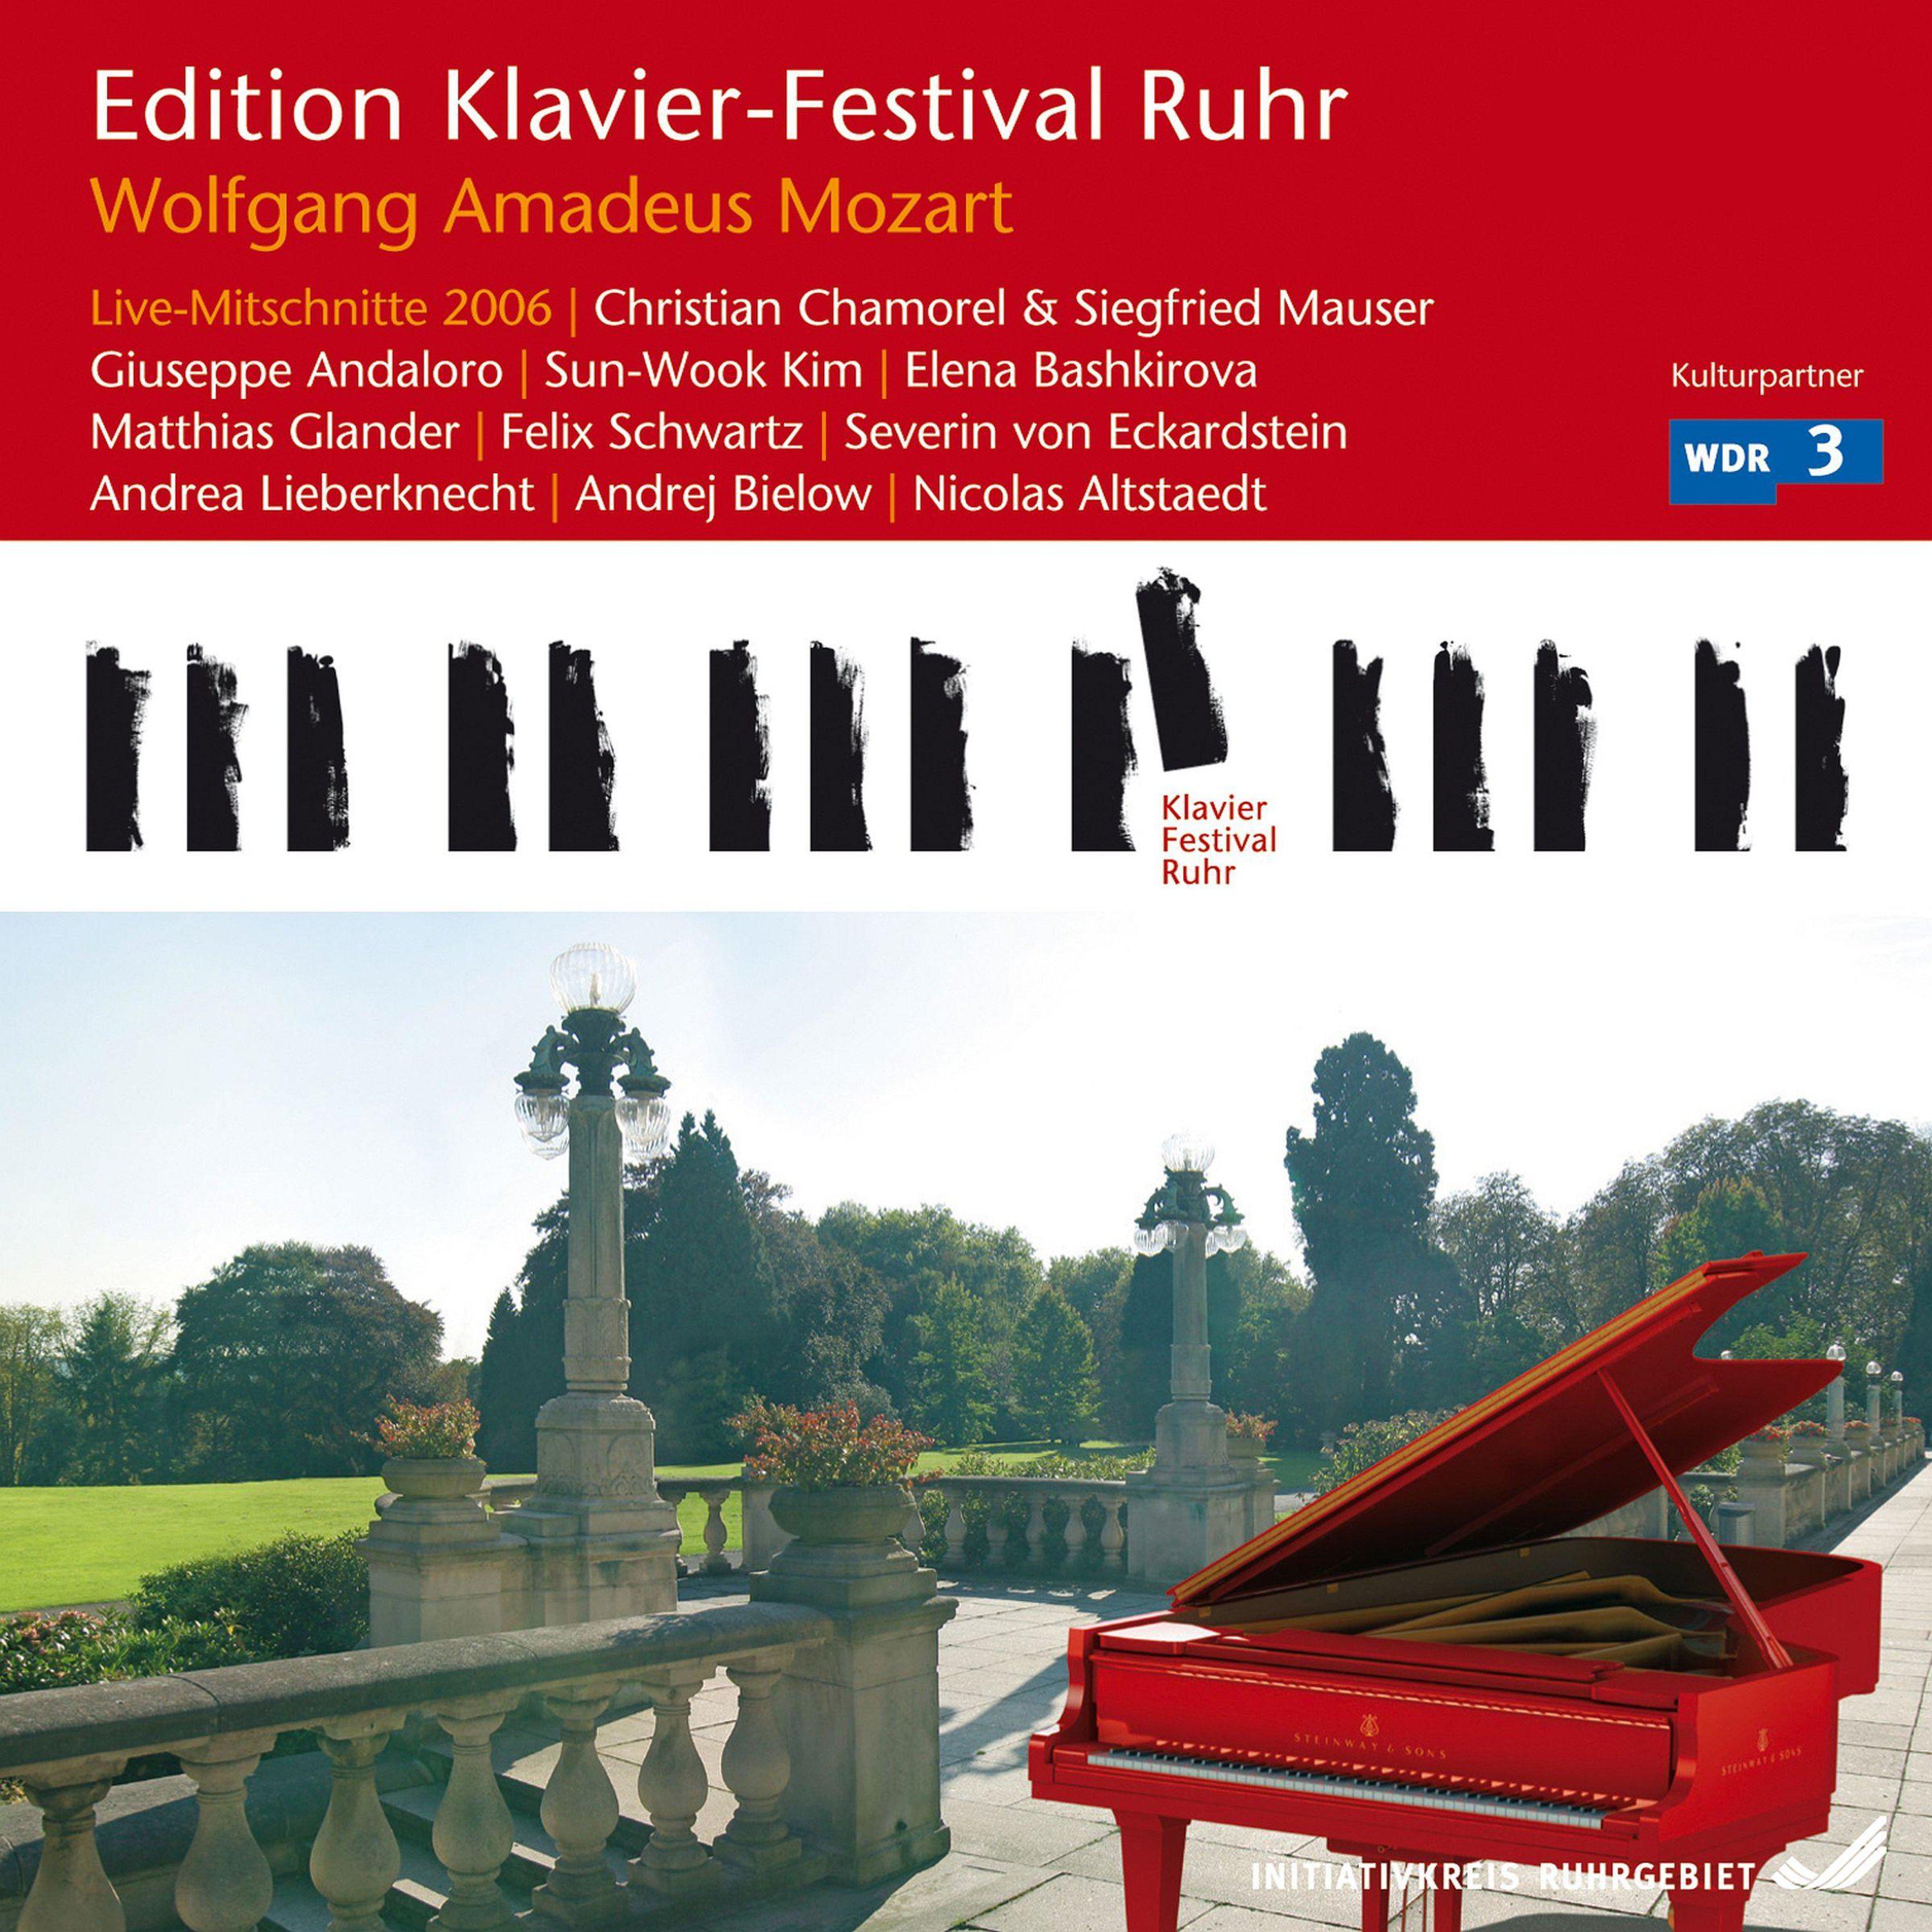 Elena Bashkirova - Trio for Piano, Clarinet and Viola in E-Flat Major, K. 498: II. Menuetto - Trio - Coda (Live)